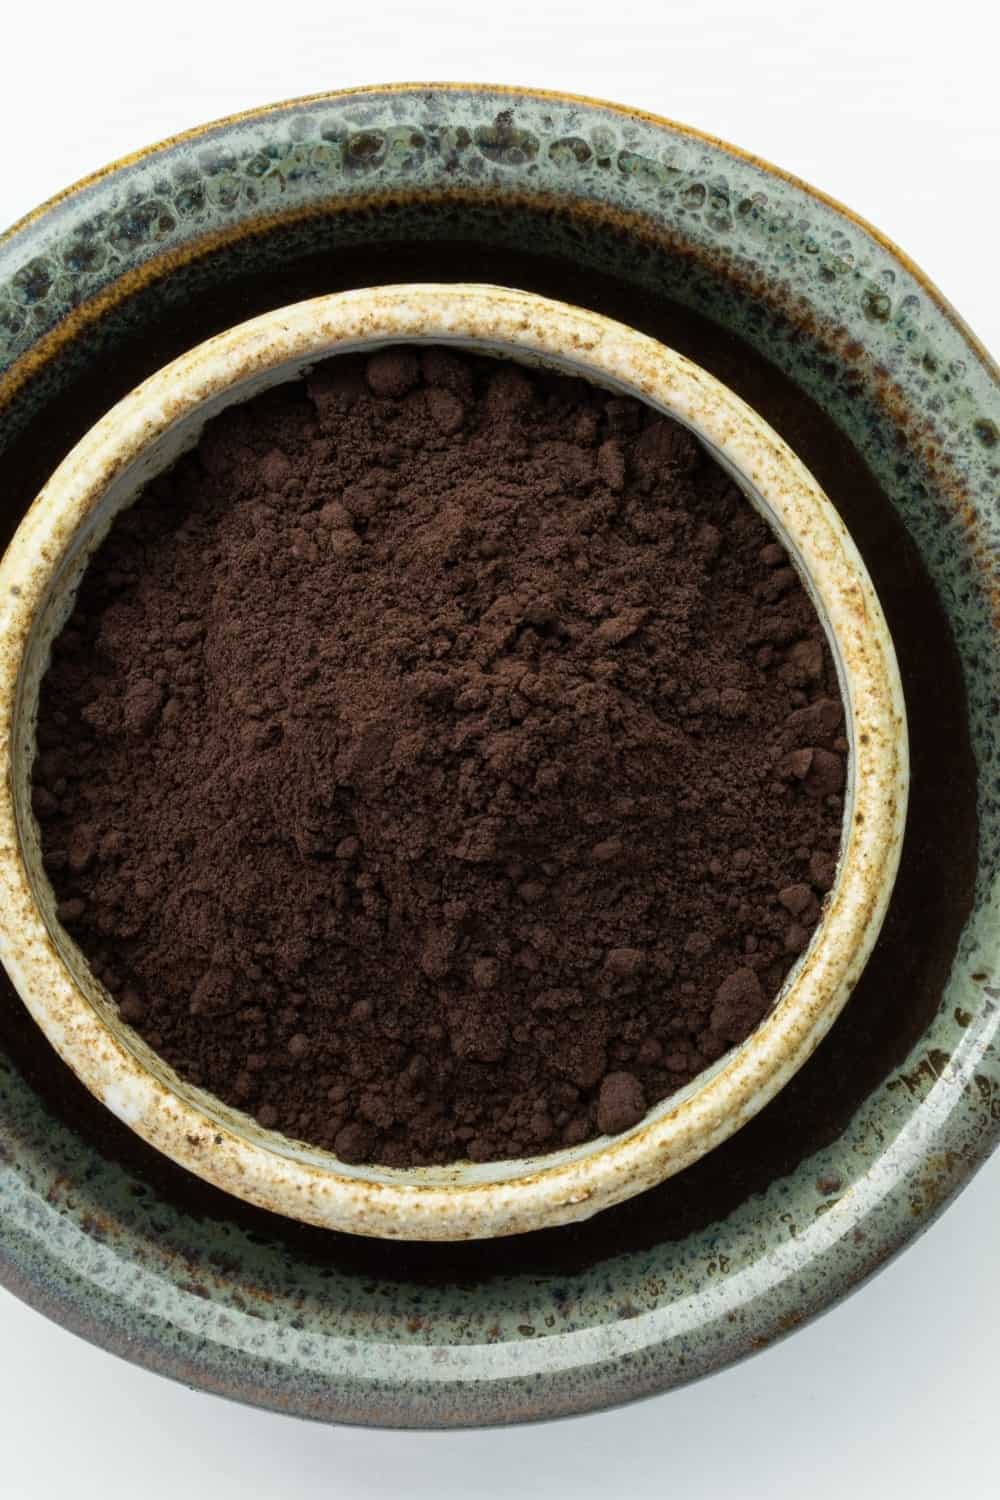 Black Cocoa Powder in a Bowl